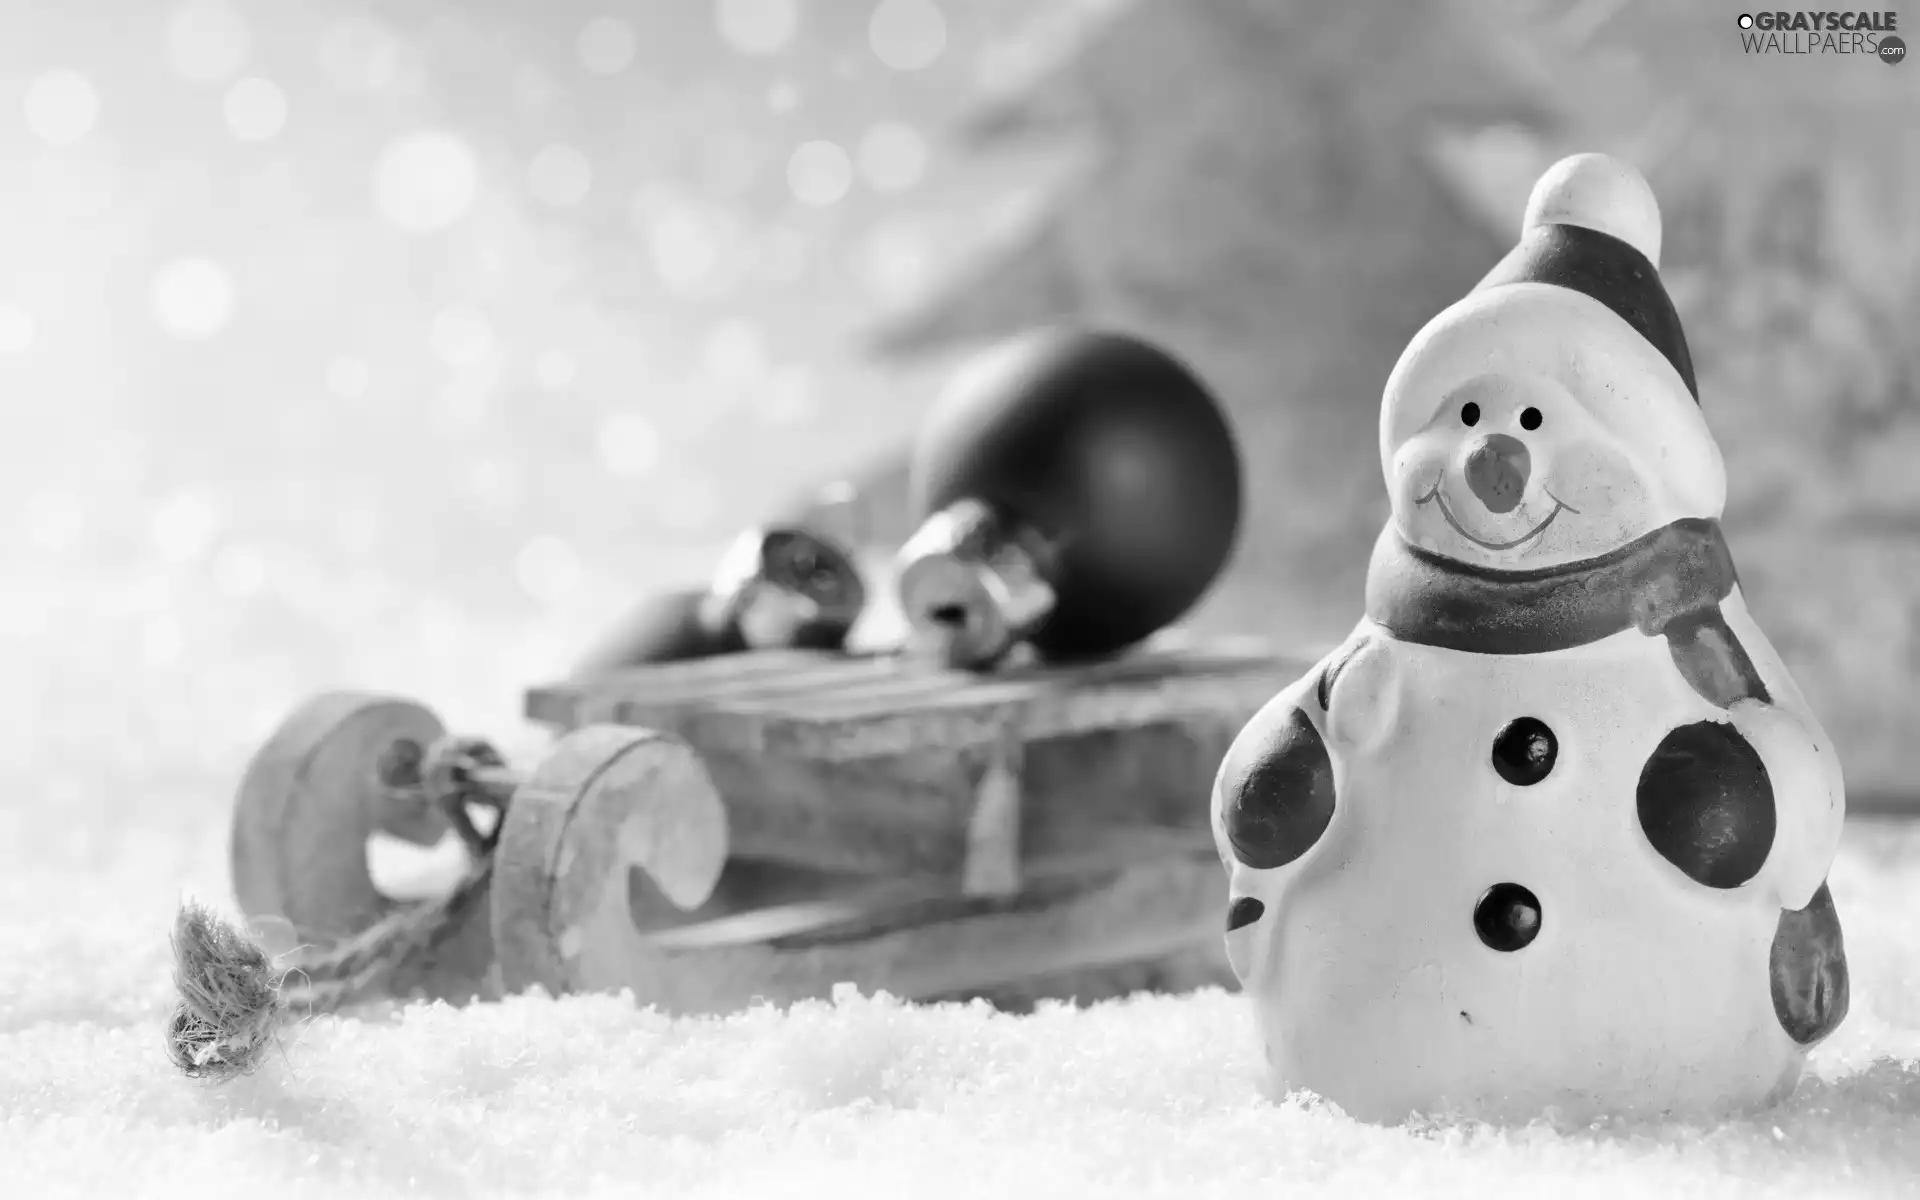 snow, baubles, Snowman, sledge, Christmas